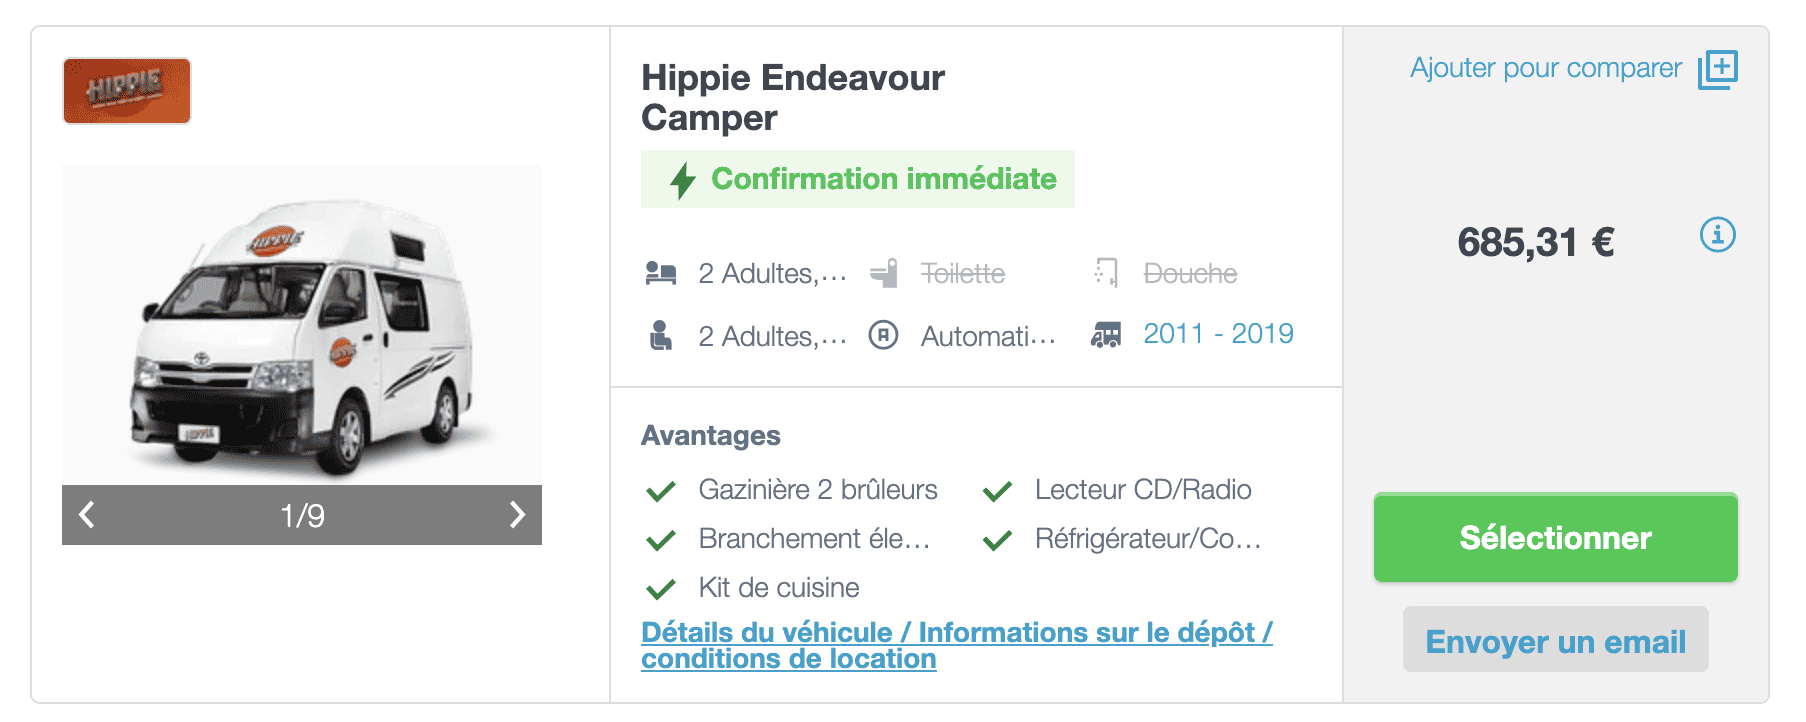 hippie endeavour camper